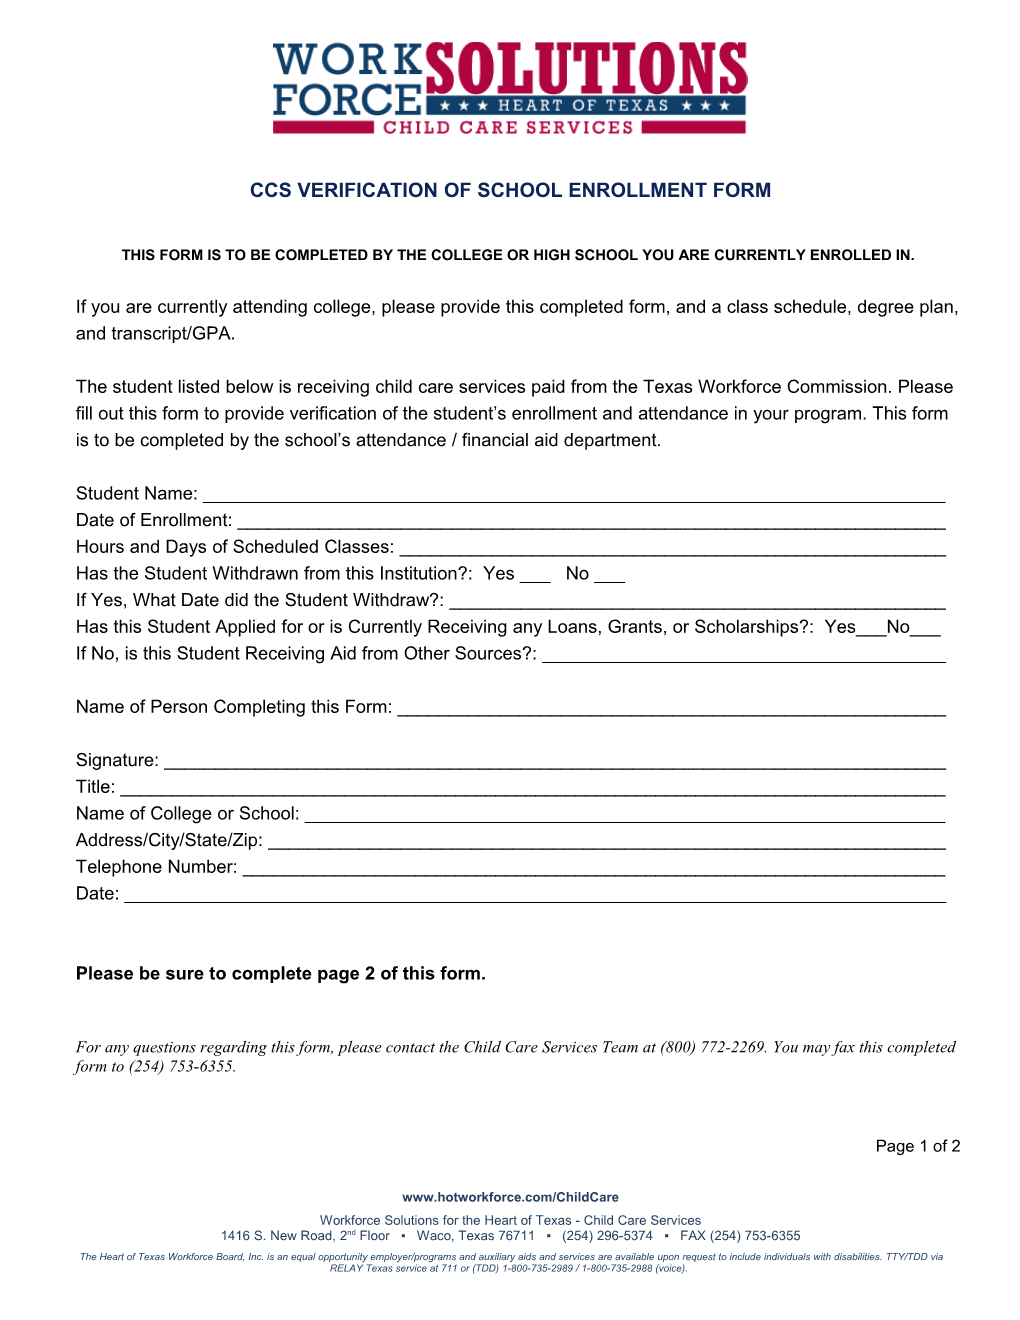 Ccs Verification of School Enrollment Form